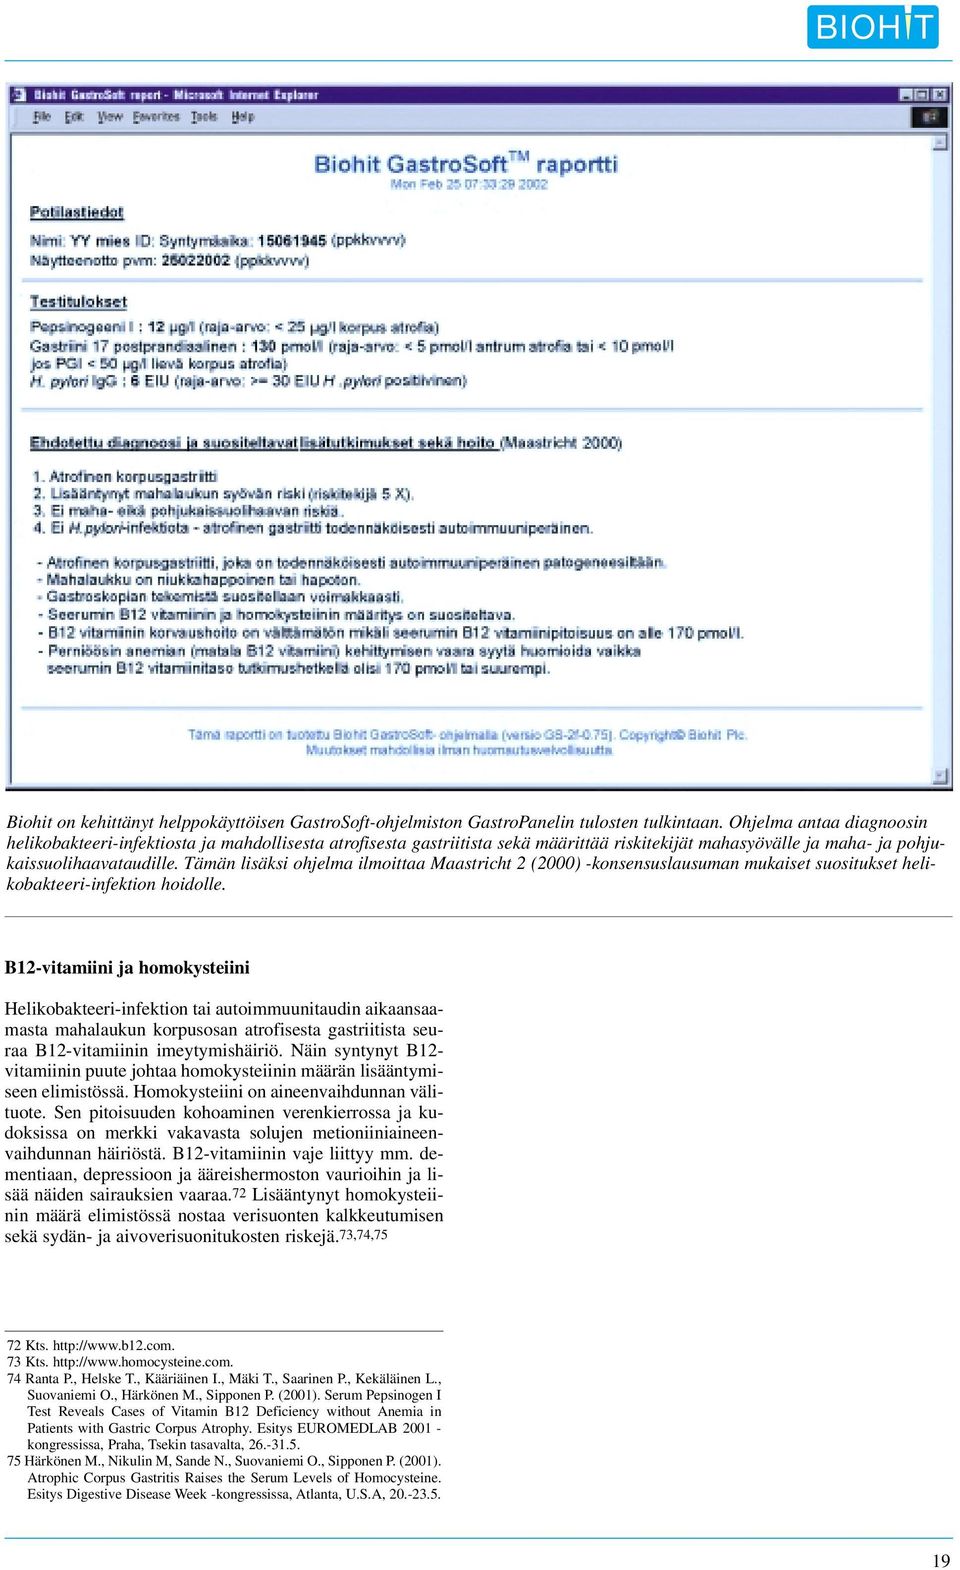 Tämän lisäksi ohjelma ilmoittaa Maastricht 2 (2000) -konsensuslausuman mukaiset suositukset helikobakteeri-infektion hoidolle.